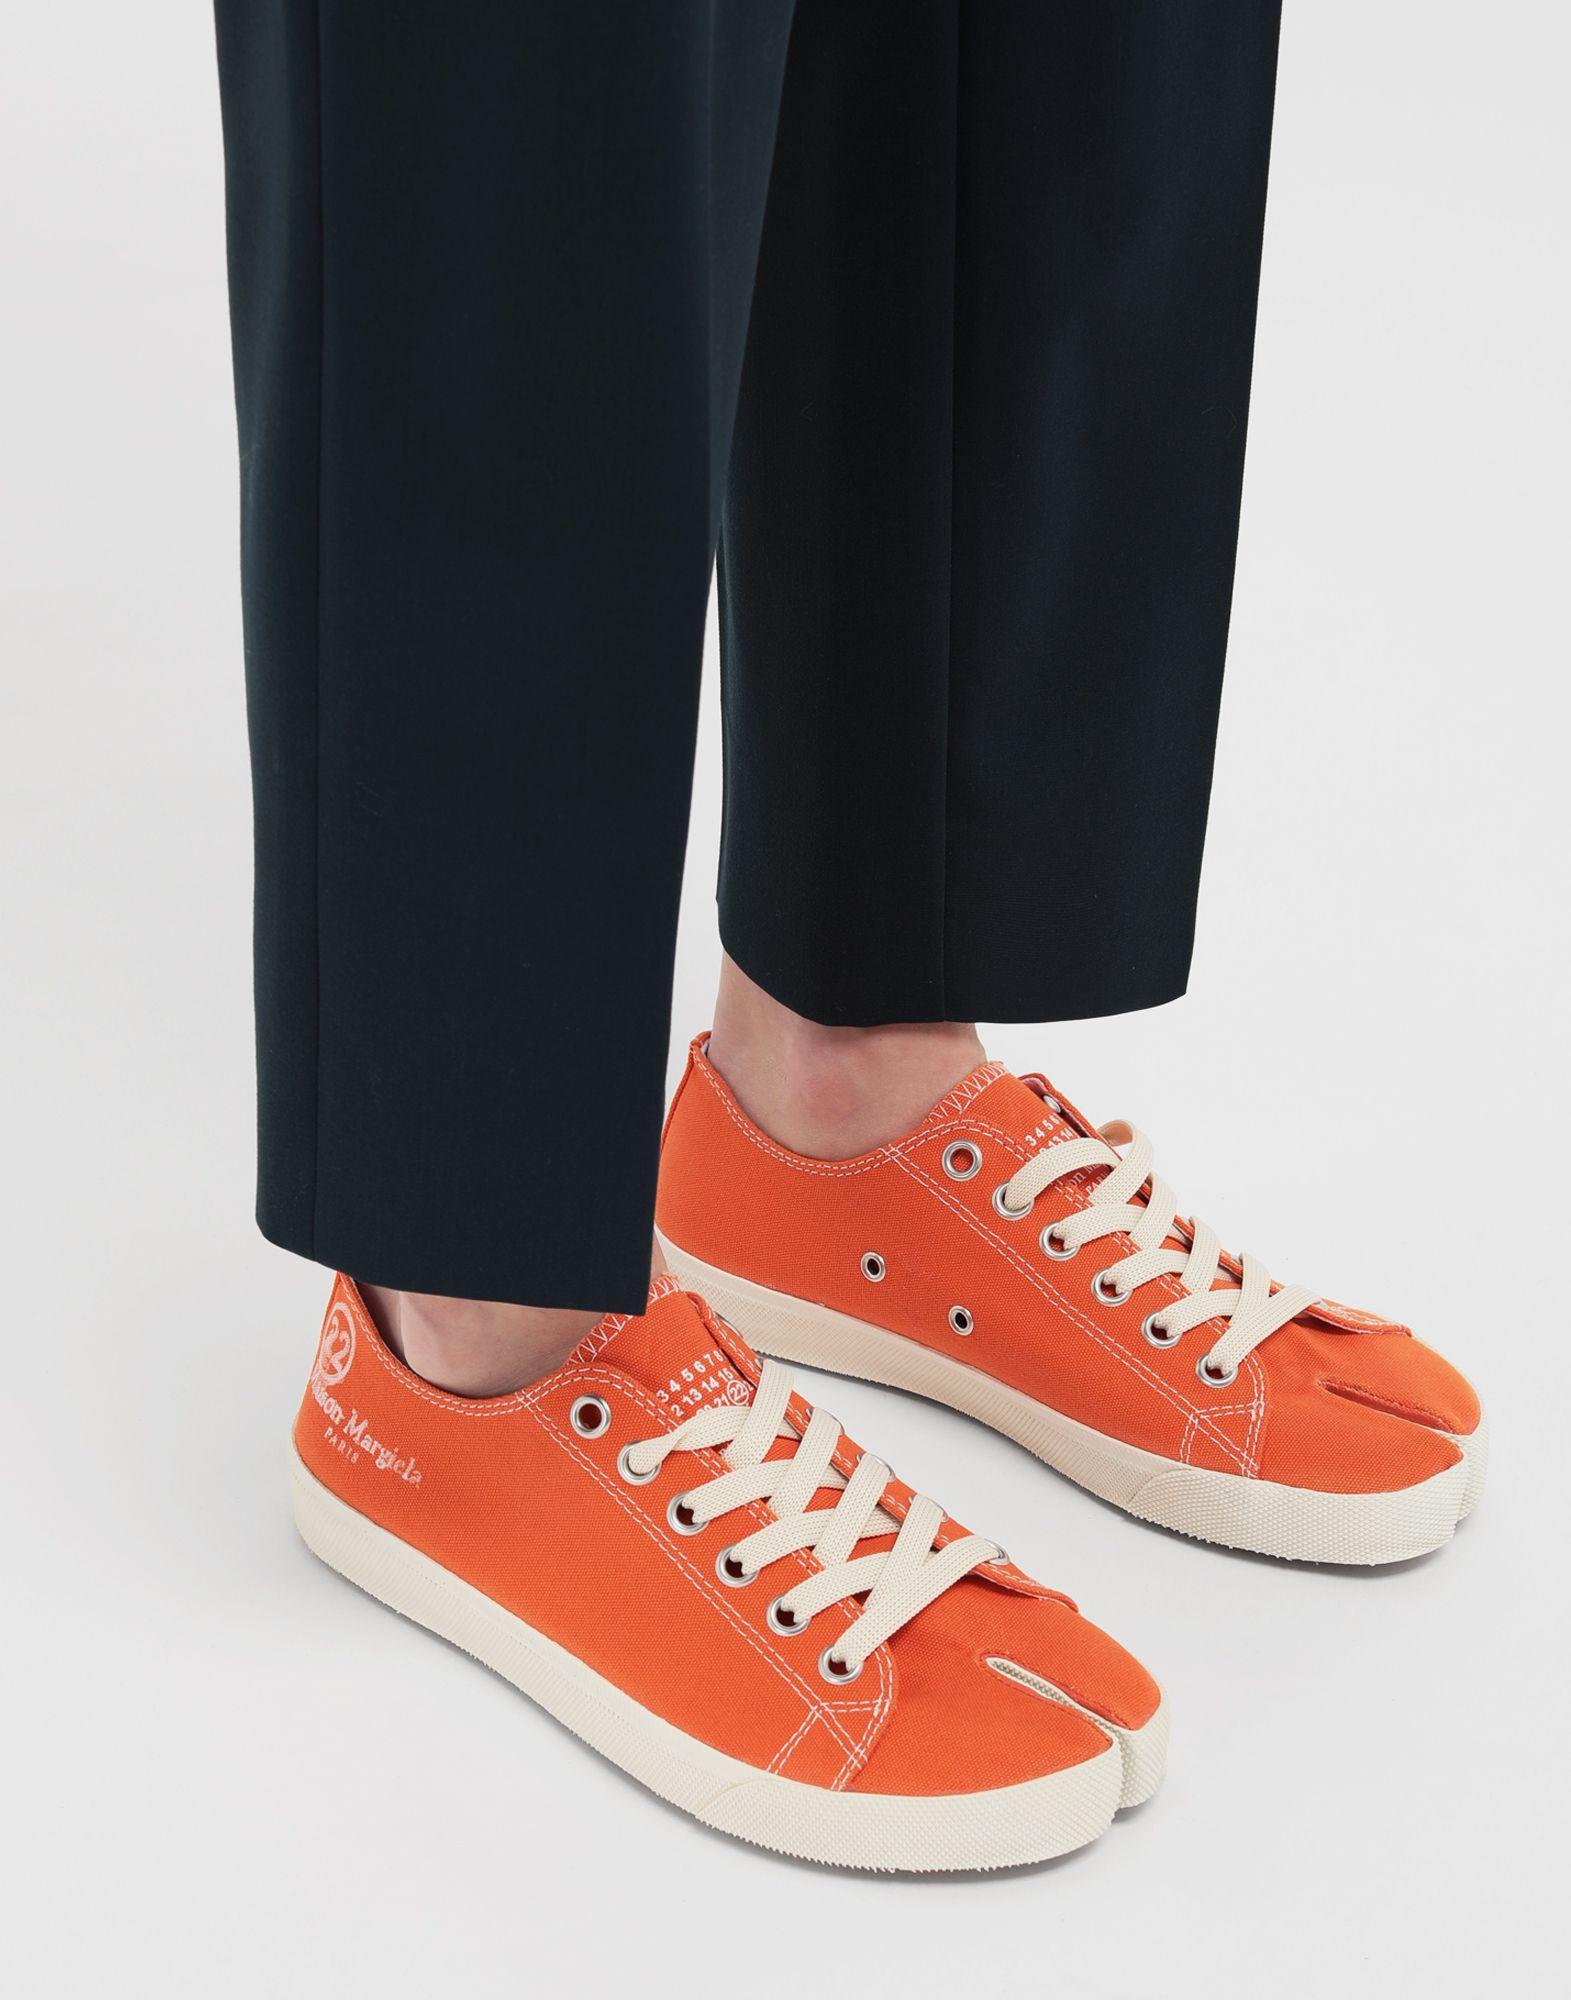 Maison Margiela Tabi Low Top Canvas Sneakers in Orange | Lyst